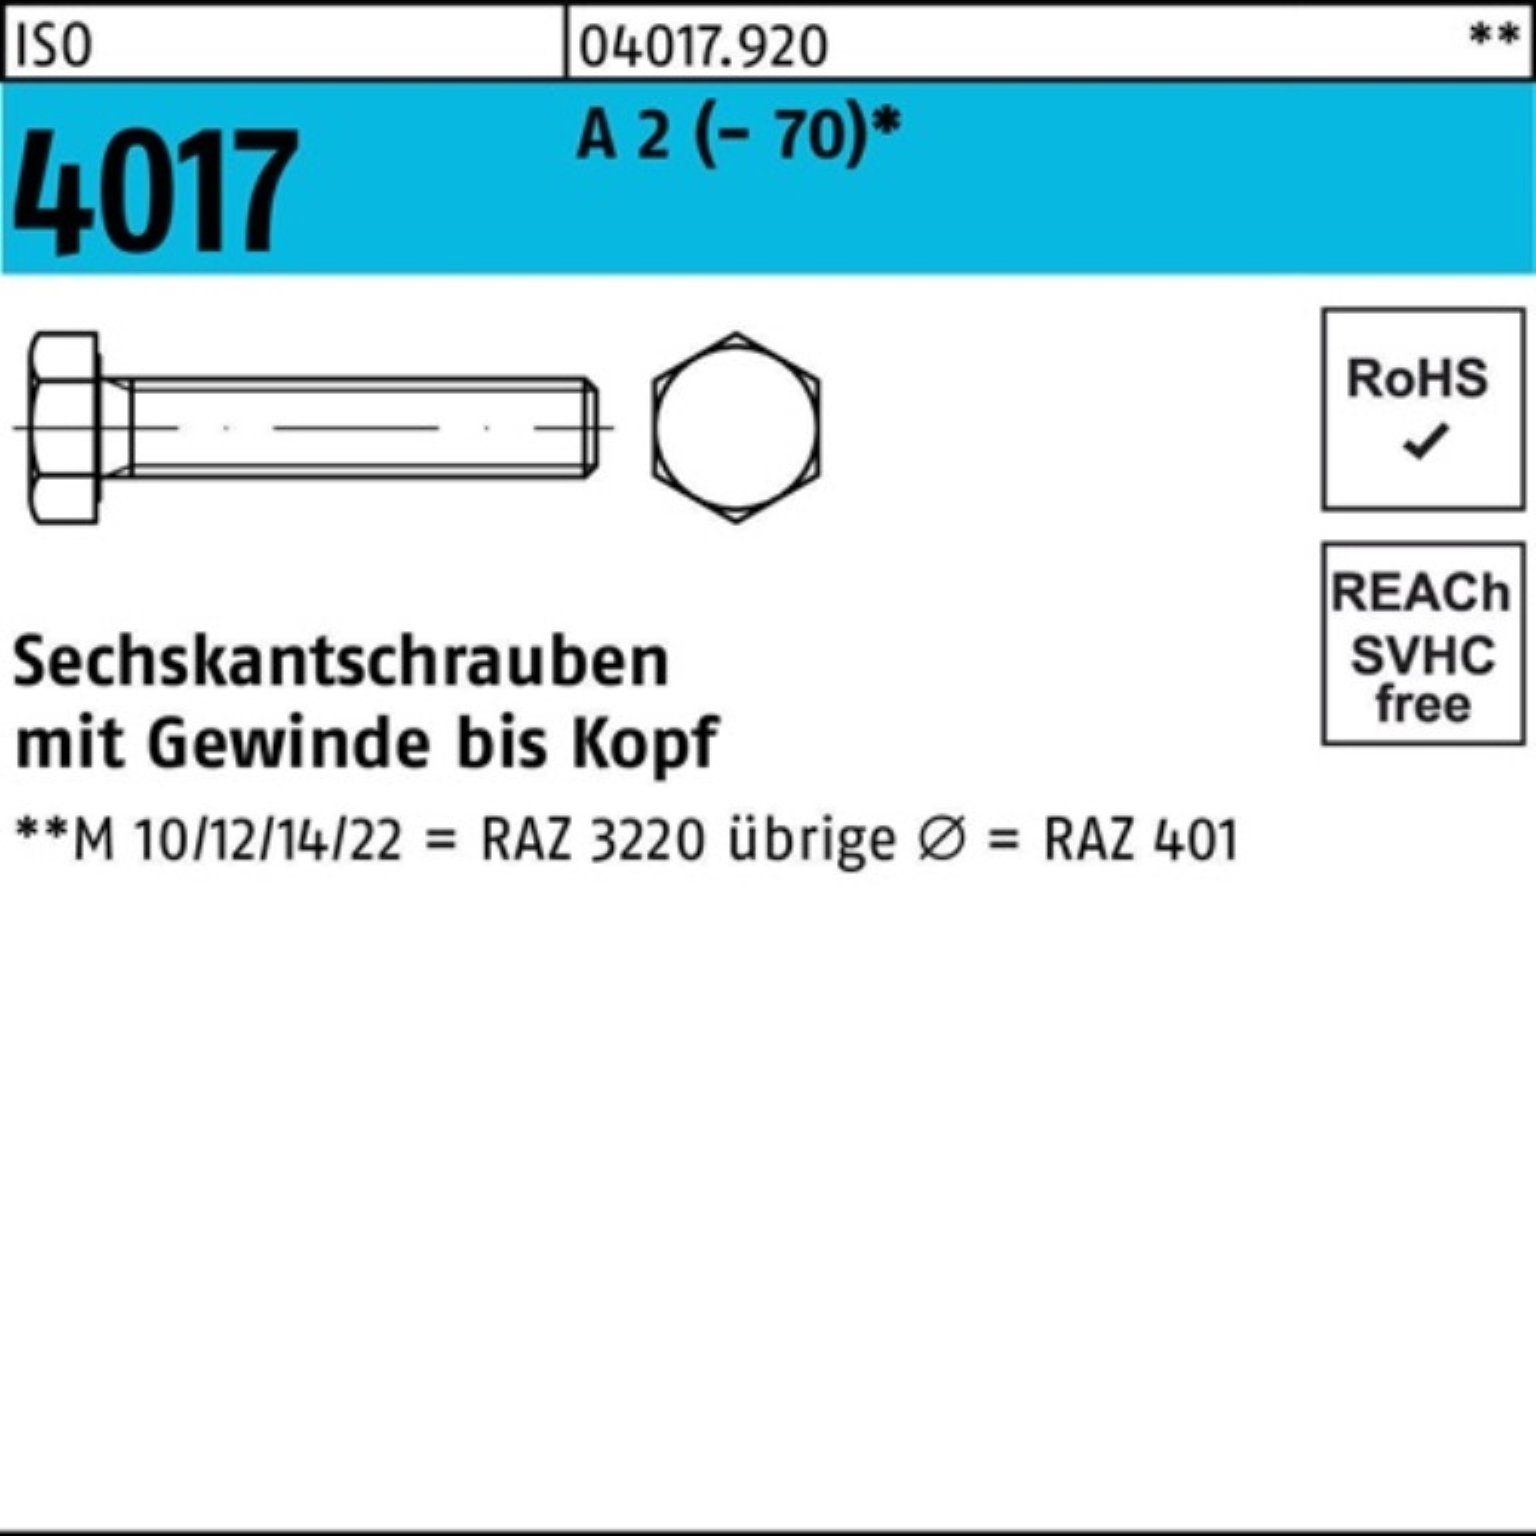 ISO Sechskantschraube Bufab M5x 200 A Pack Sechskantschraube VG Stück 35 2 4017 200er (70)